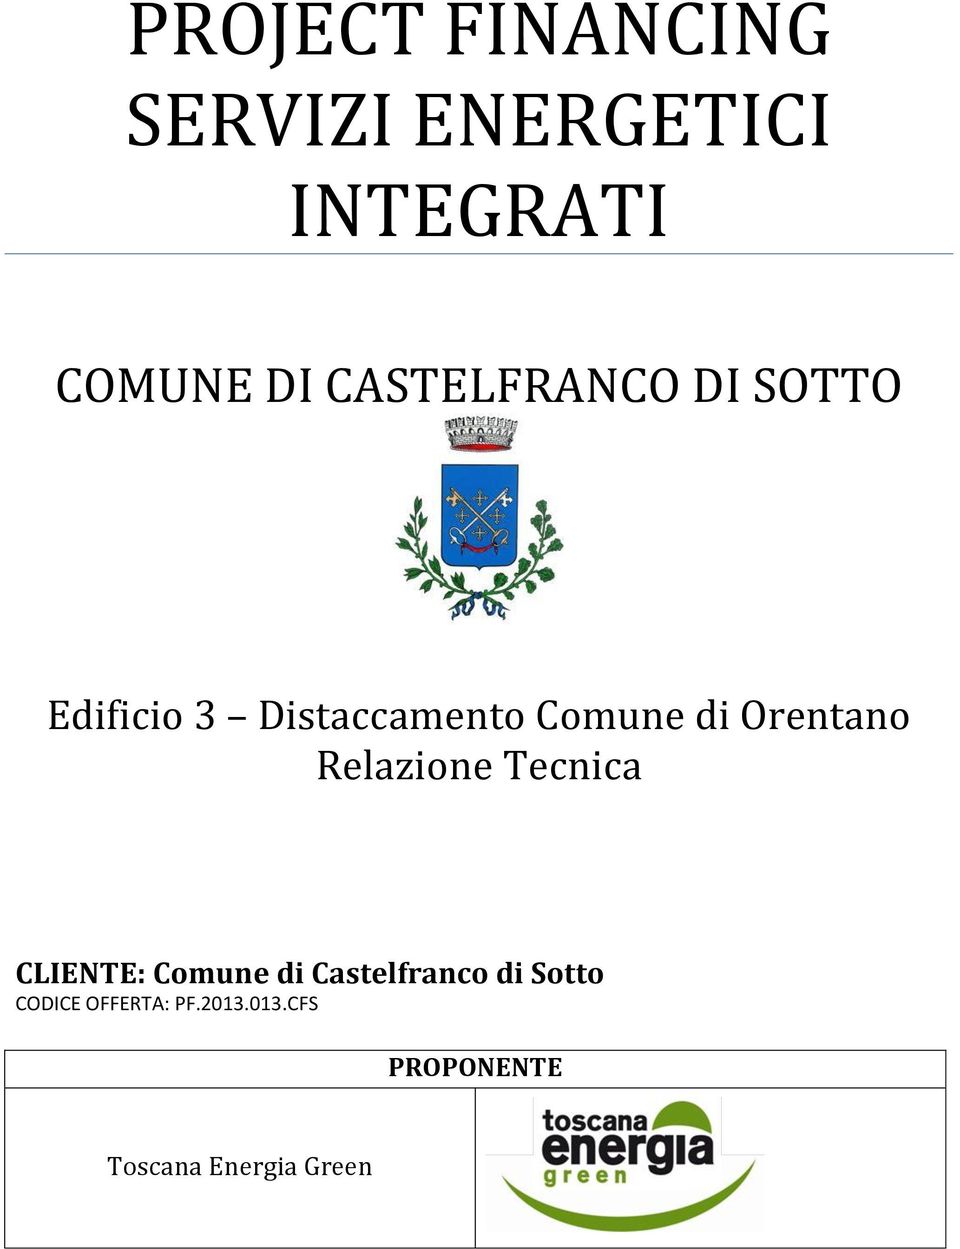 Orentano Relazione Tecnica CLIENTE: Comune di Castelfranco